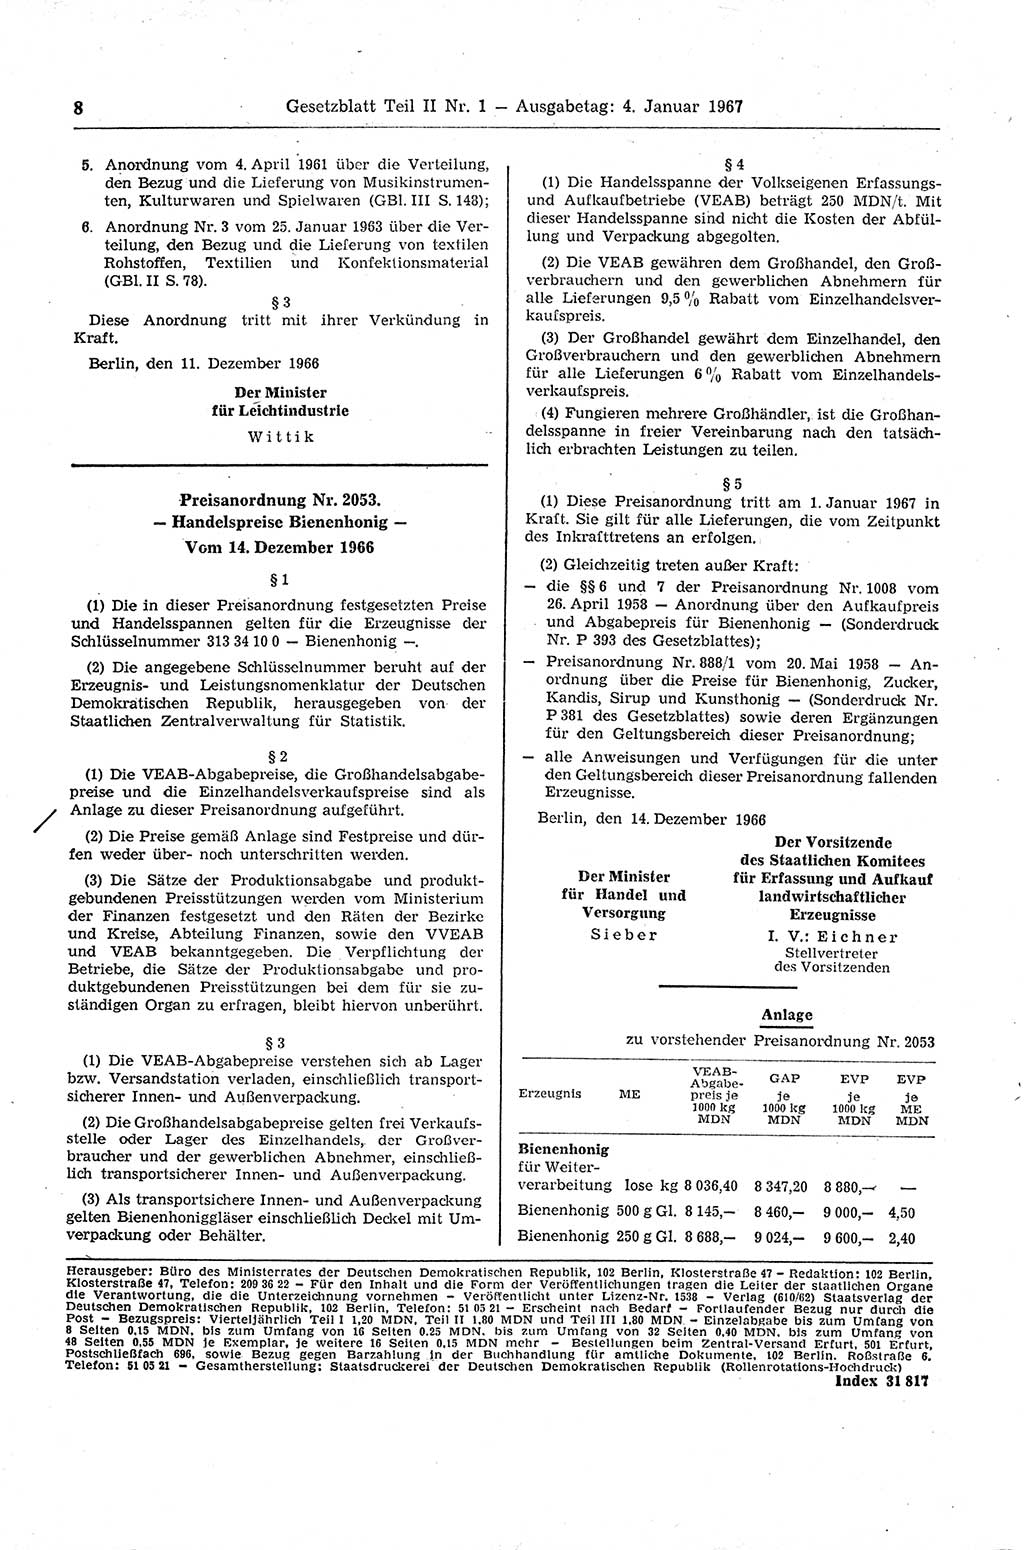 Gesetzblatt (GBl.) der Deutschen Demokratischen Republik (DDR) Teil ⅠⅠ 1967, Seite 8 (GBl. DDR ⅠⅠ 1967, S. 8)